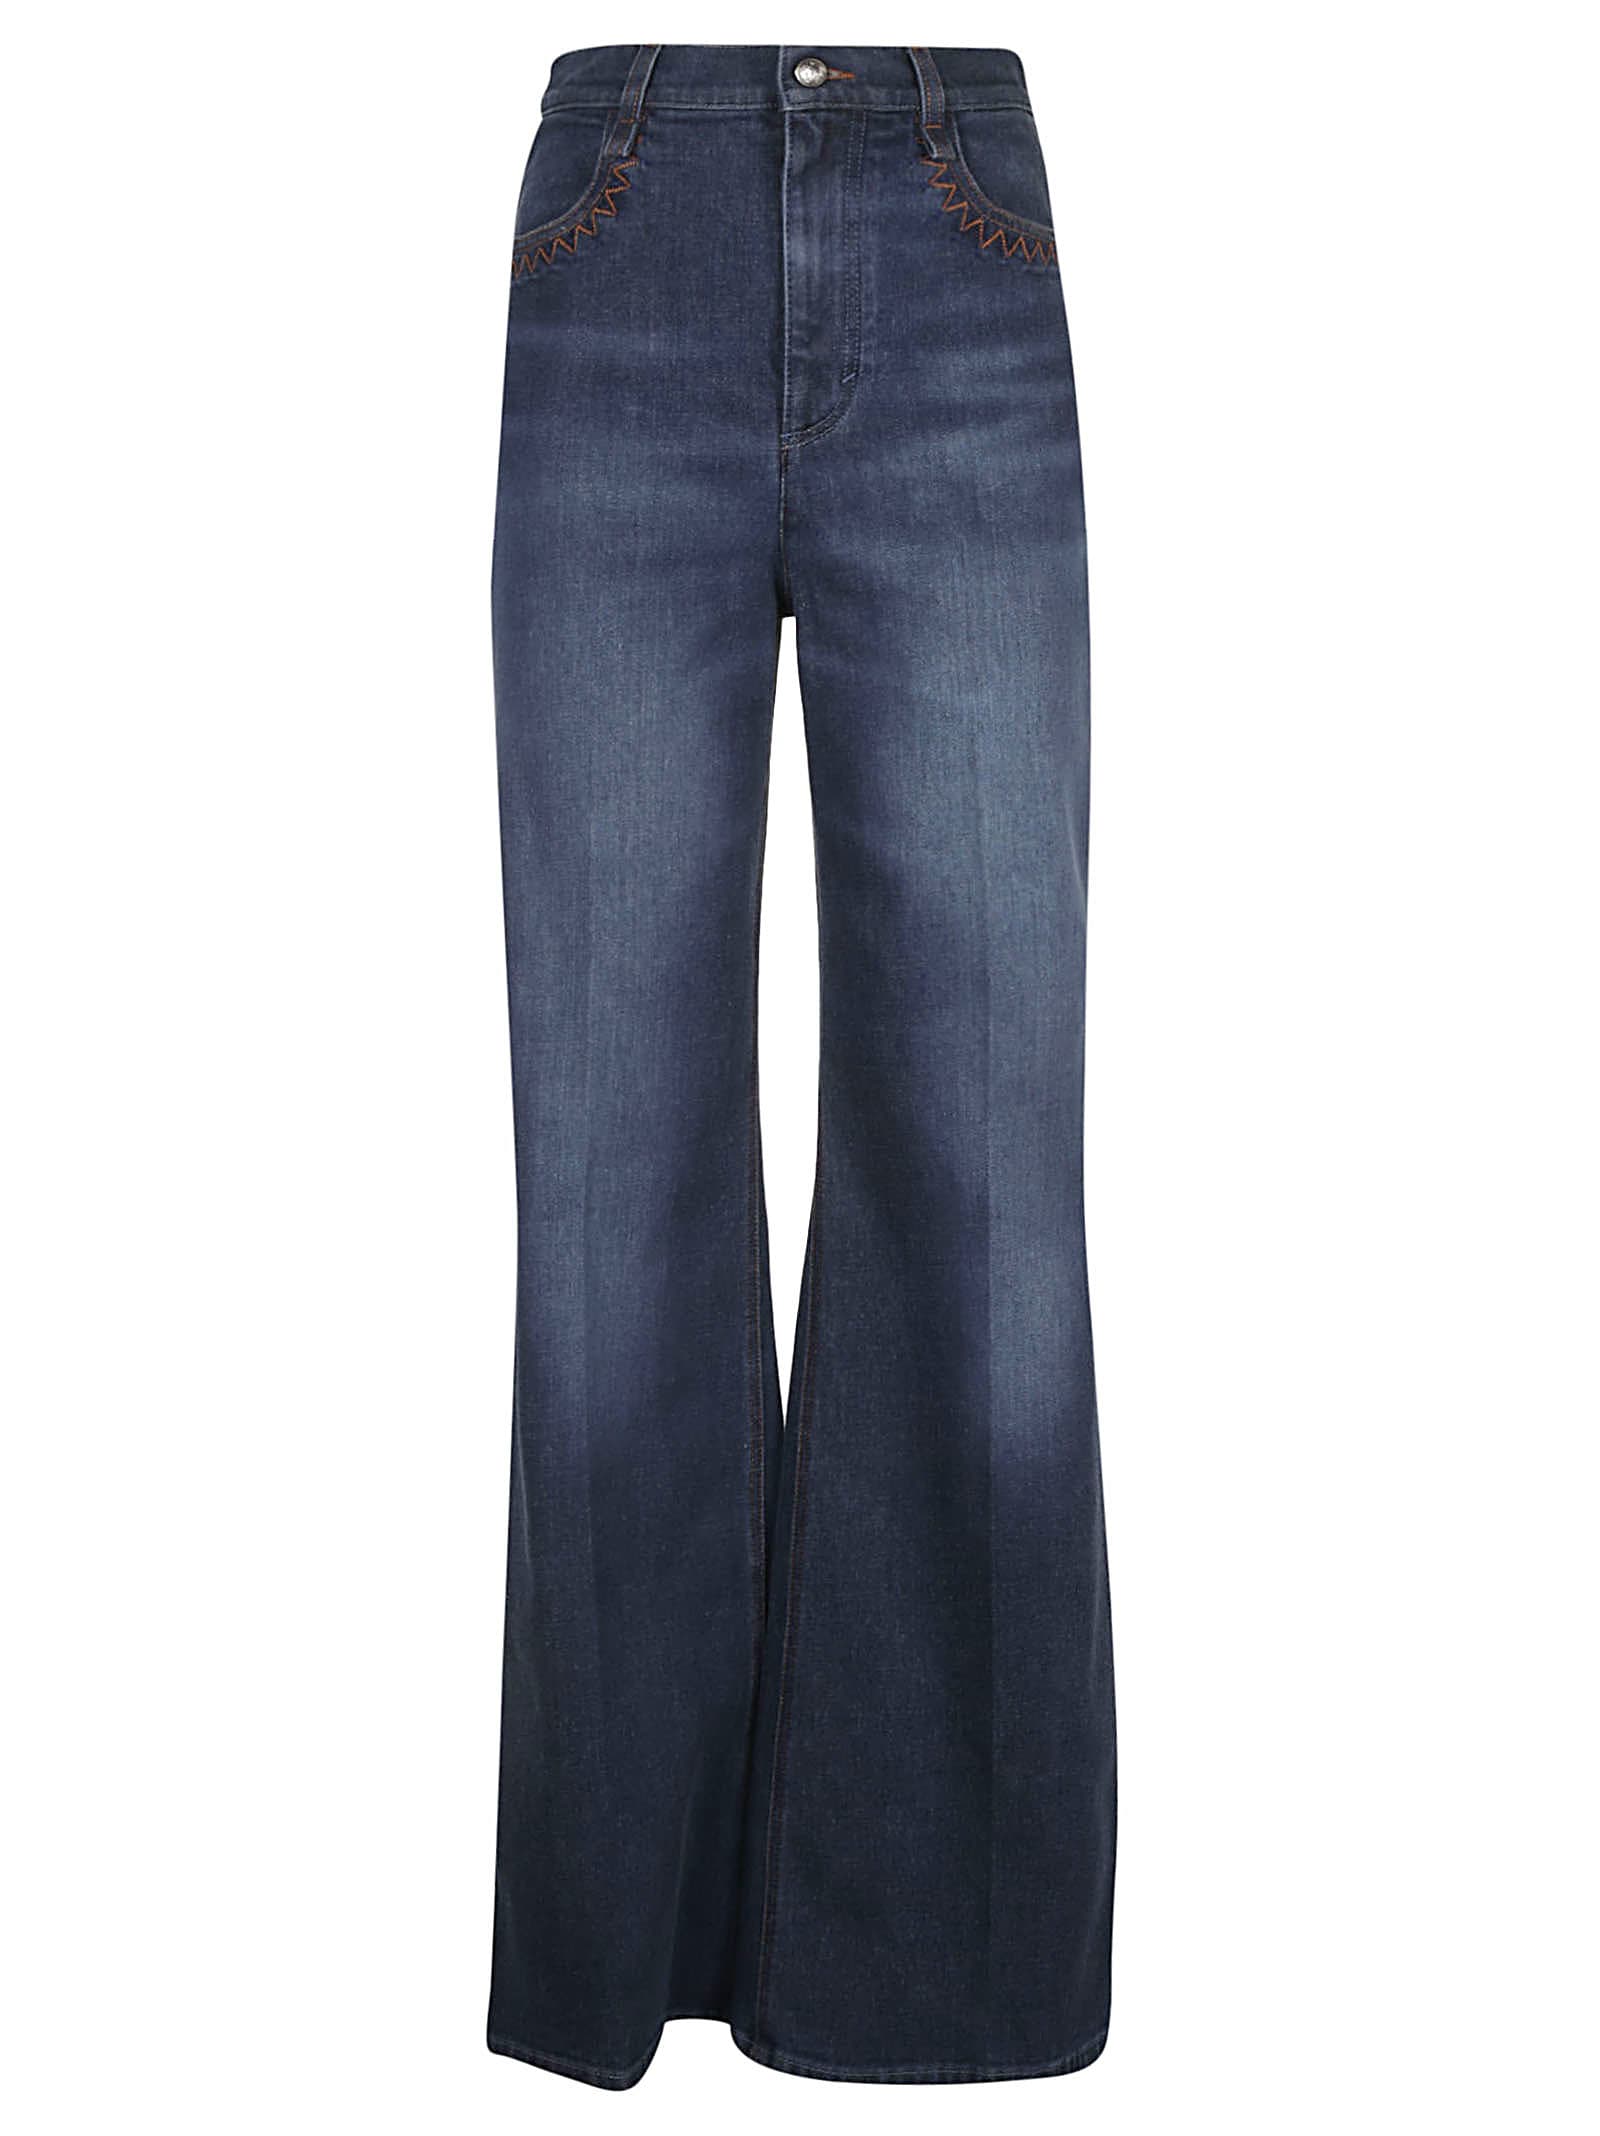 Chloé Long Length Flared Jeans